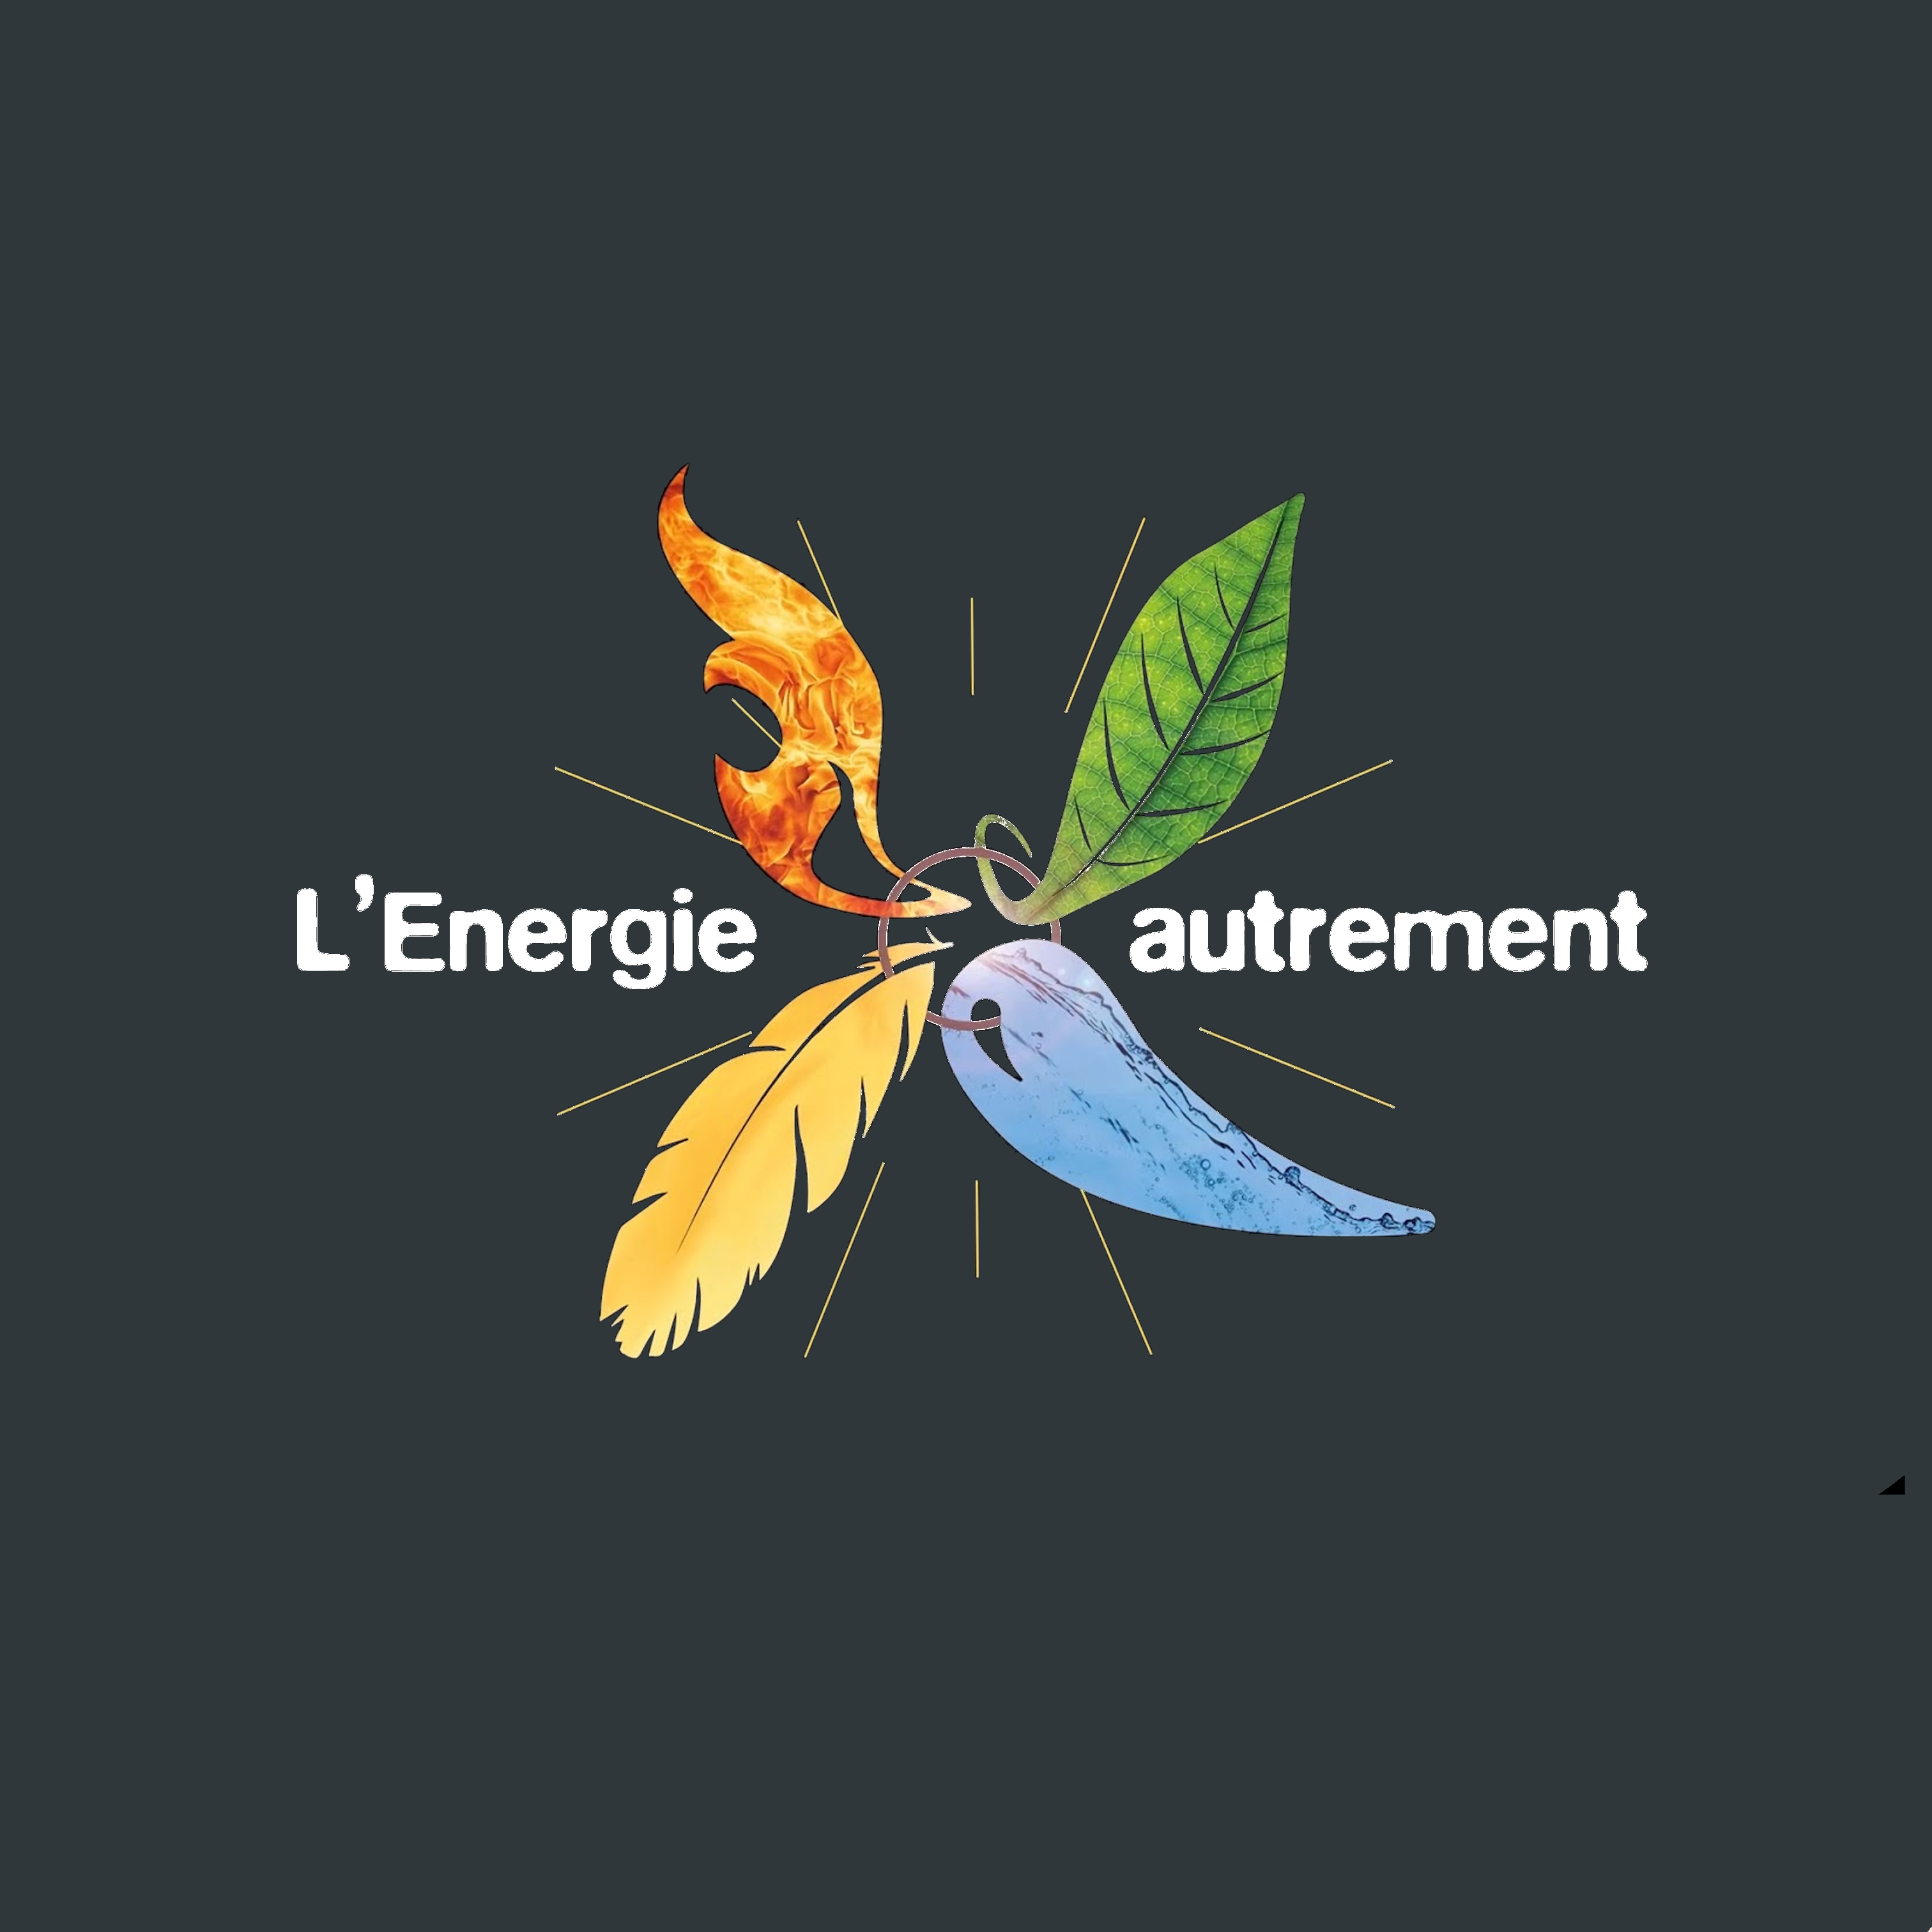 Group-L'Energie autrement Derni re diapo rocketium logo barnab .png